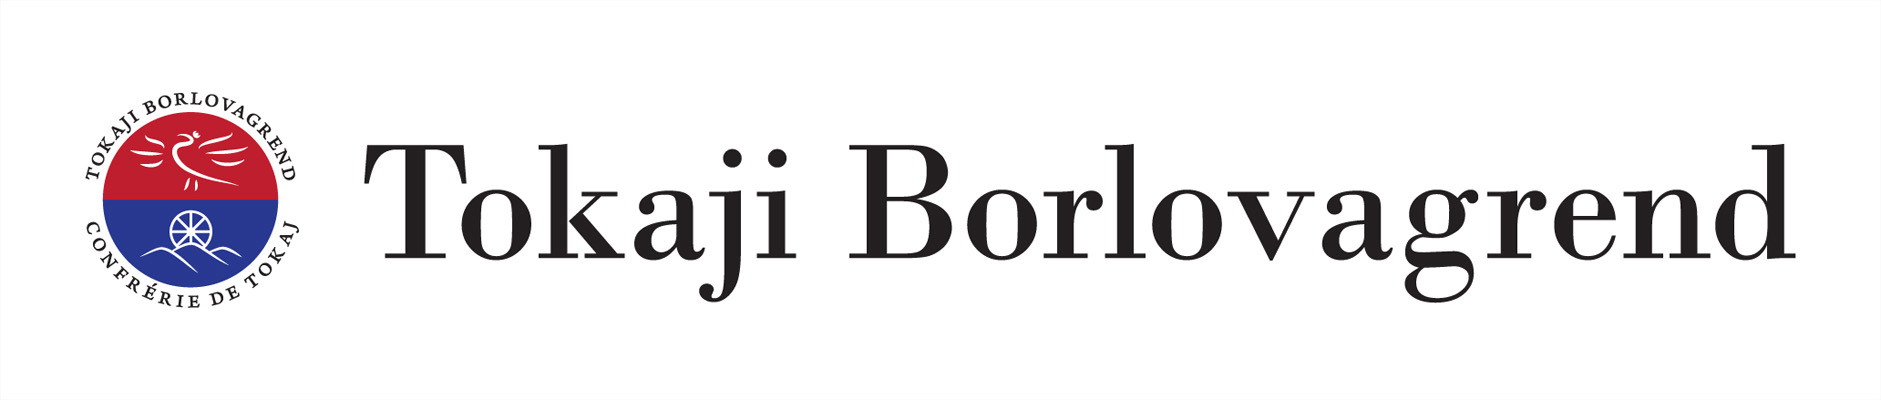 Tokaji borlovagrend logo